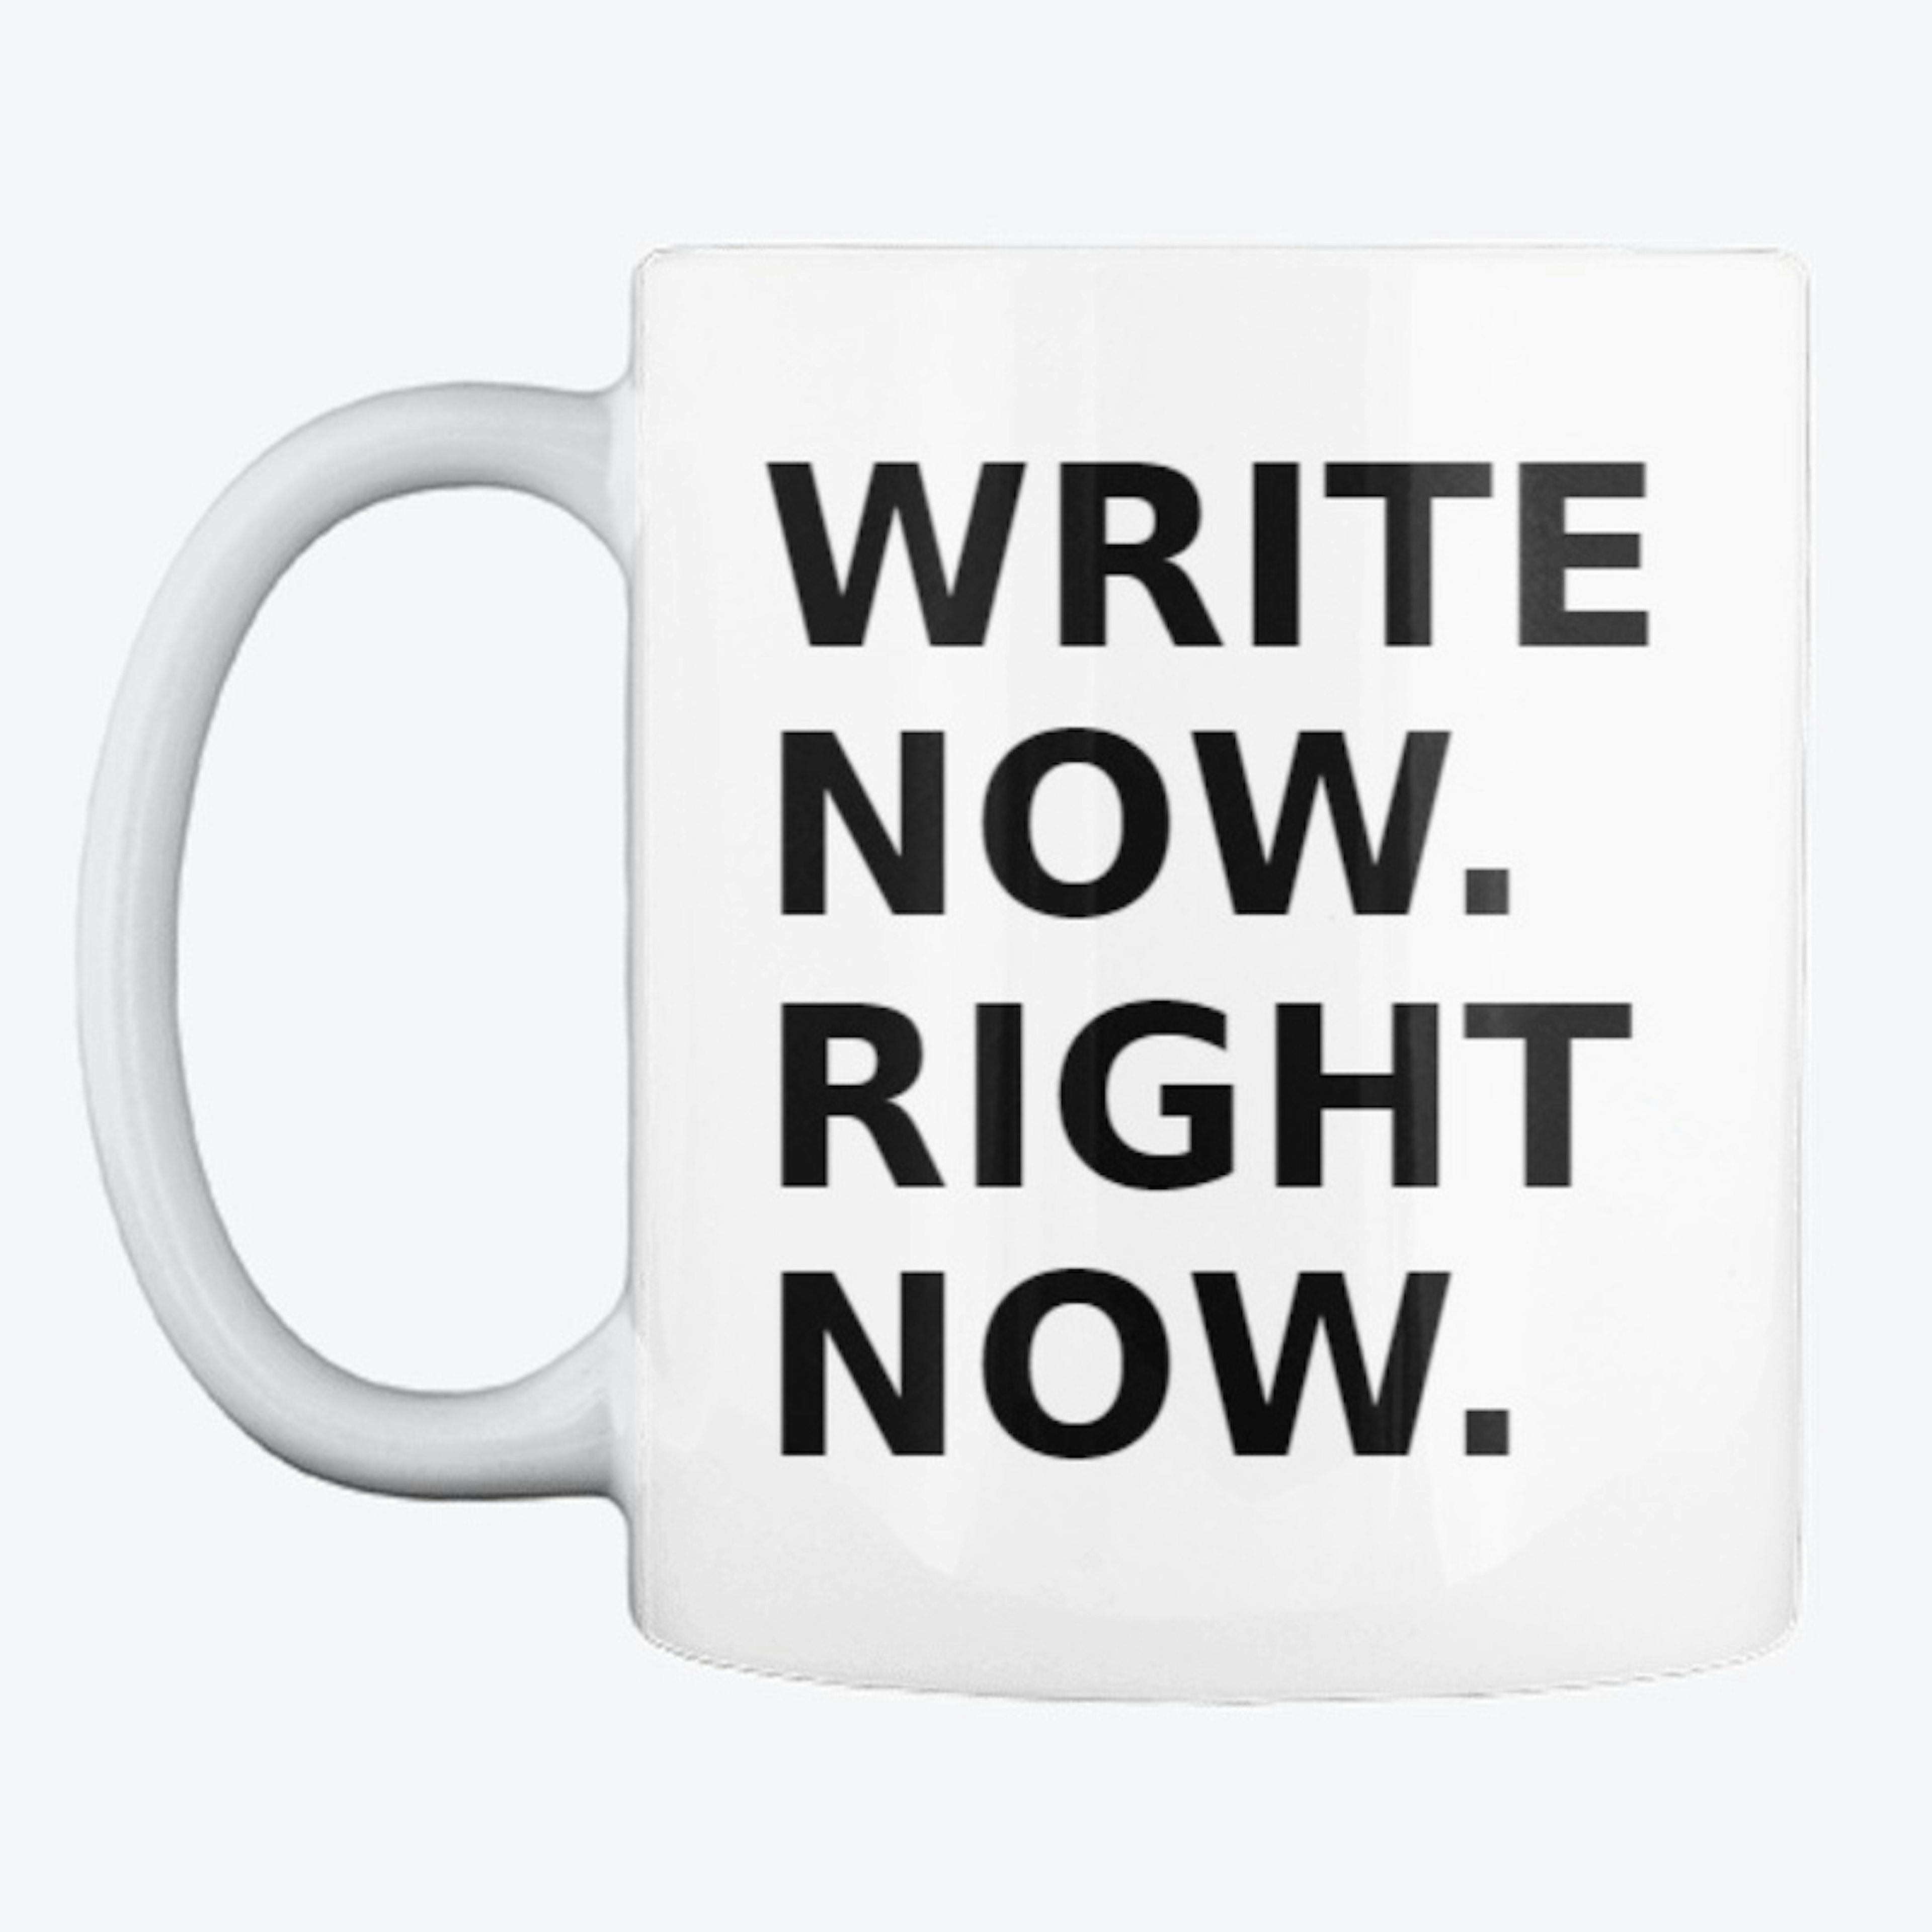 WRITE NOW. RIGHT NOW. - MUG